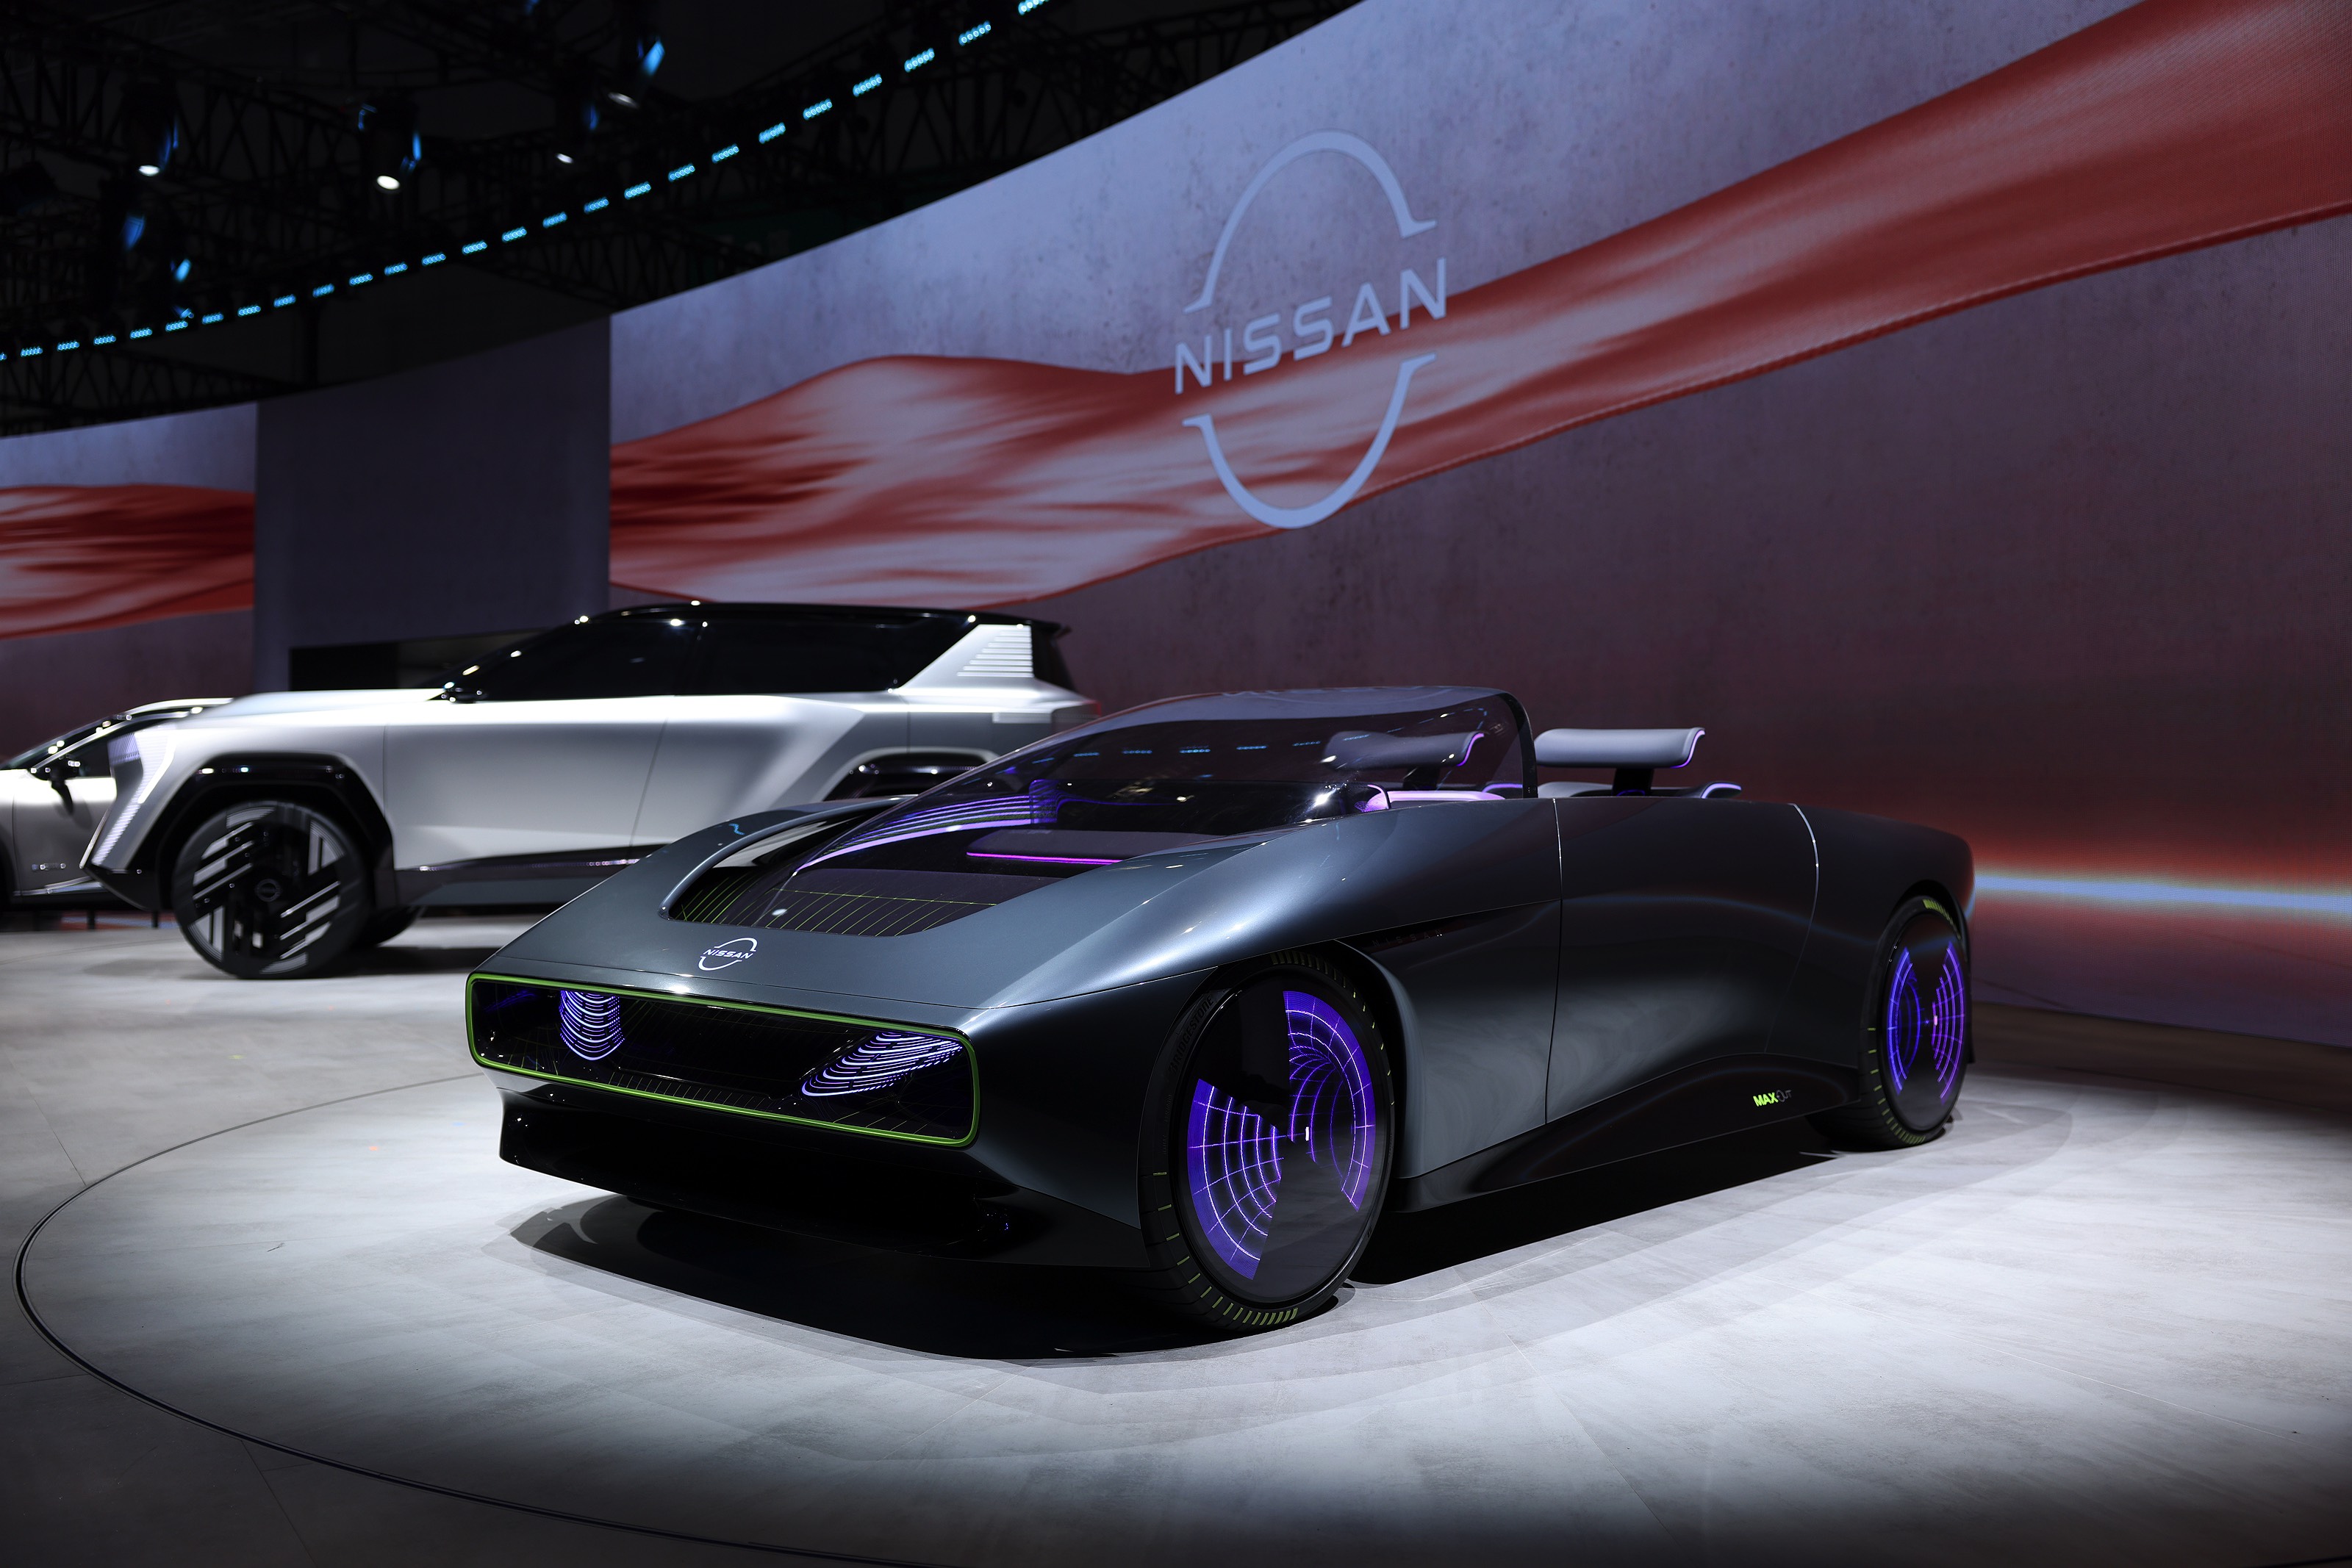 arizon概念车全球首秀,日产汽车加速向智能网联和电驱化技术迸发